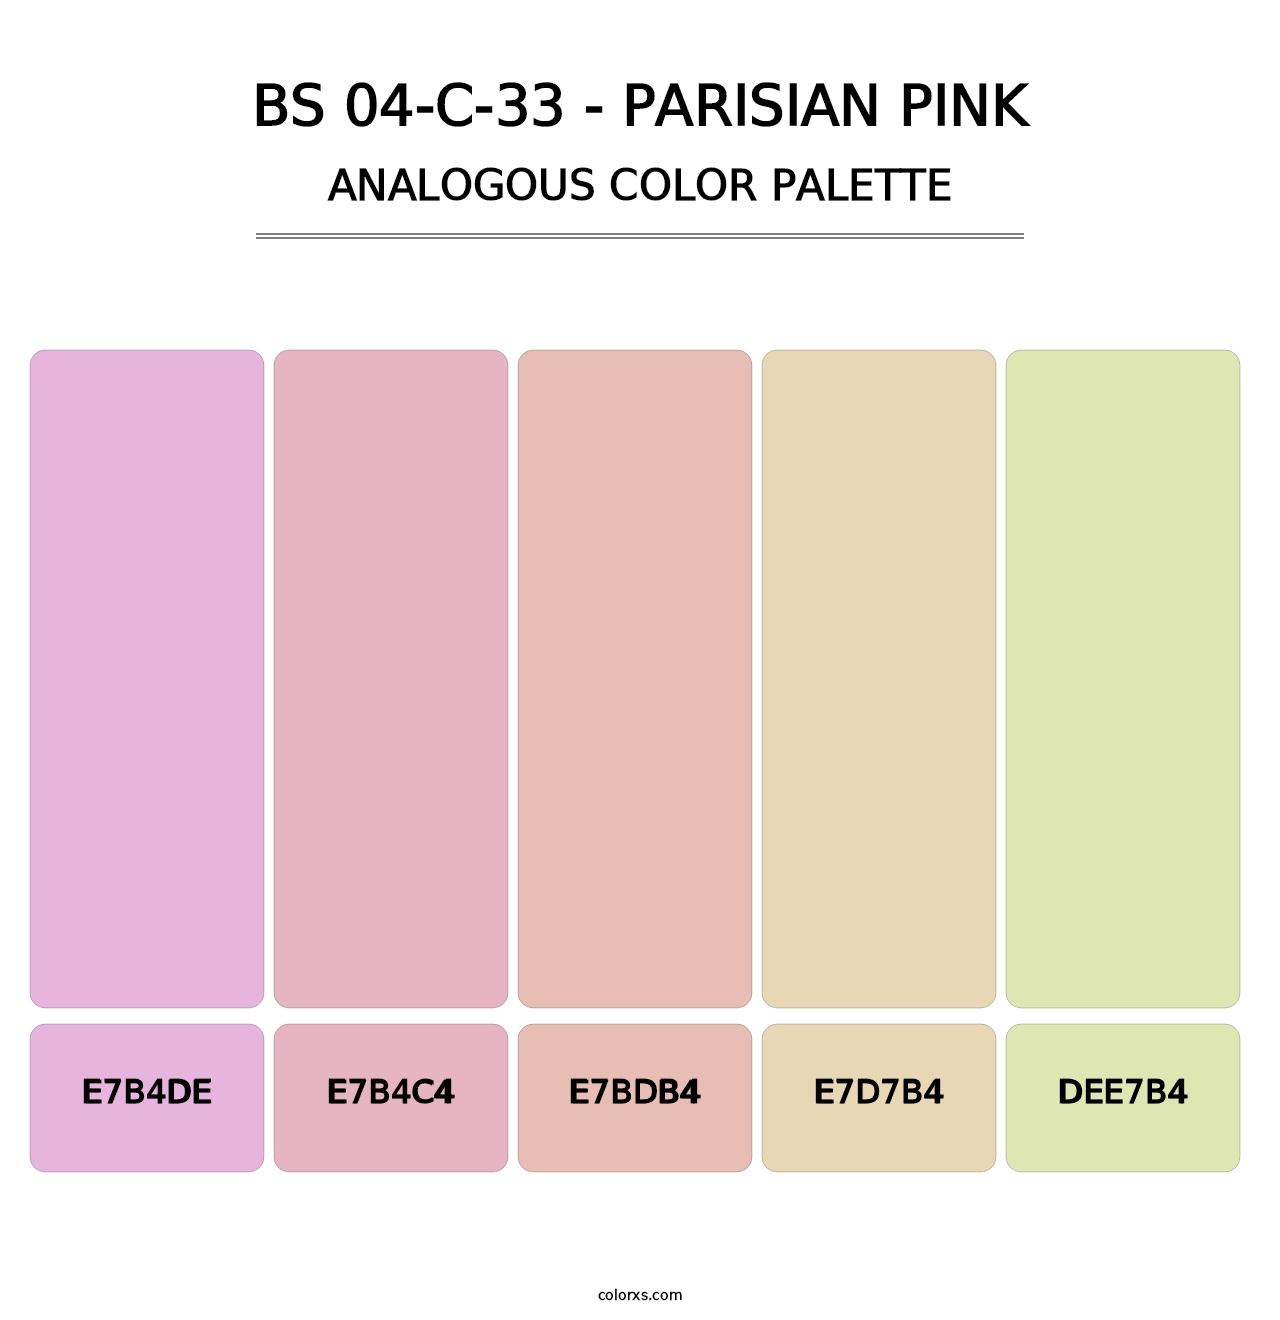 BS 04-C-33 - Parisian Pink - Analogous Color Palette